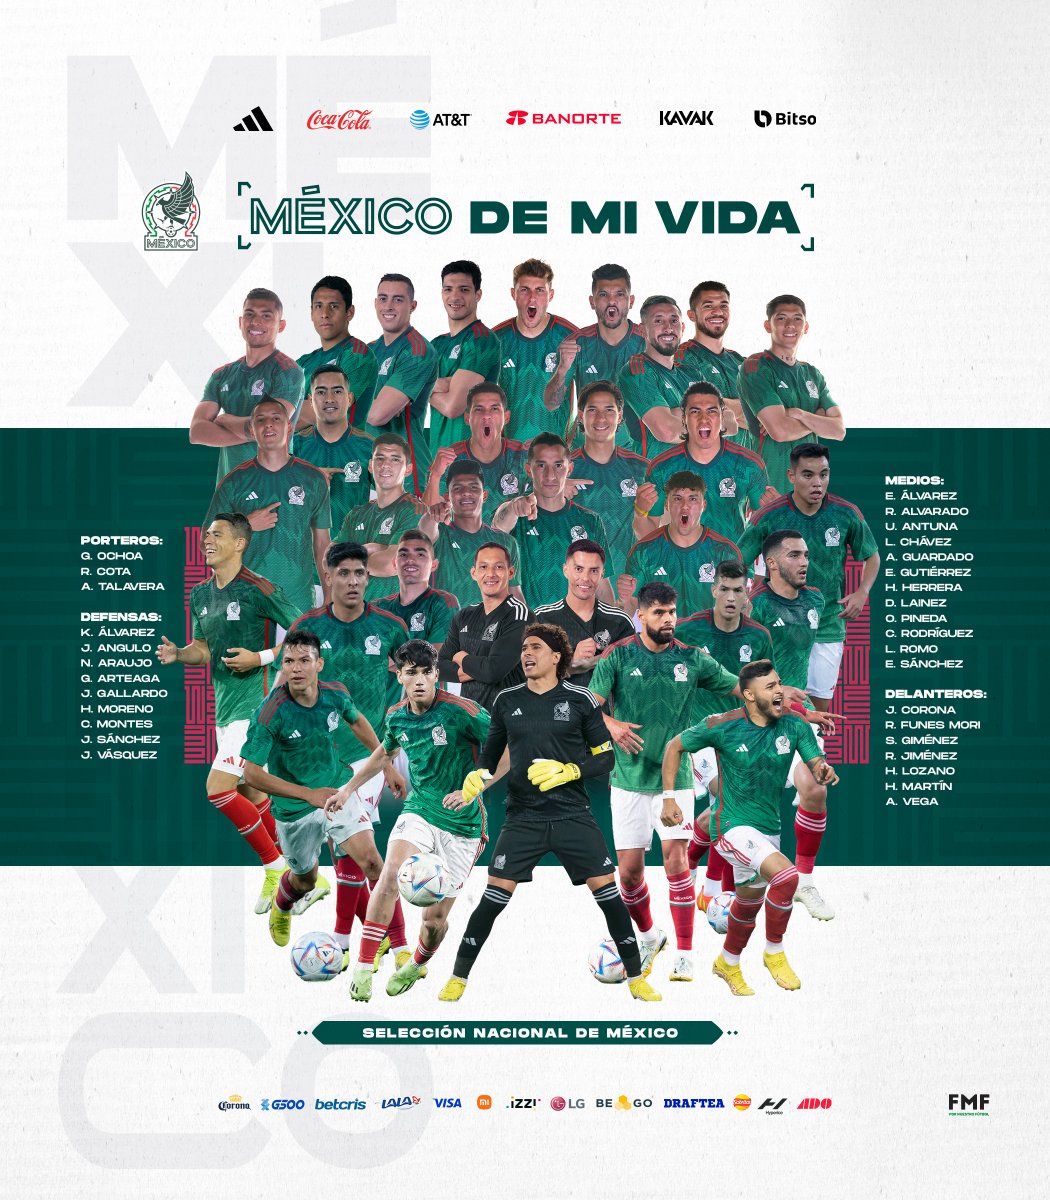 Somos millones de mexicanos con la misma ilusión rumbo al Mundial de Qatar 2022! 🇶🇦🏆 ¡A luchar y dar todo por nuestro país, por #MéxicoDeMiVida! 🇲🇽😤 ¡VAMOOOOS, EQUIPO! 🗣 ¡¡JUNTOS HAGAMOS HISTORIA!! #FMFporNuestroFútbol